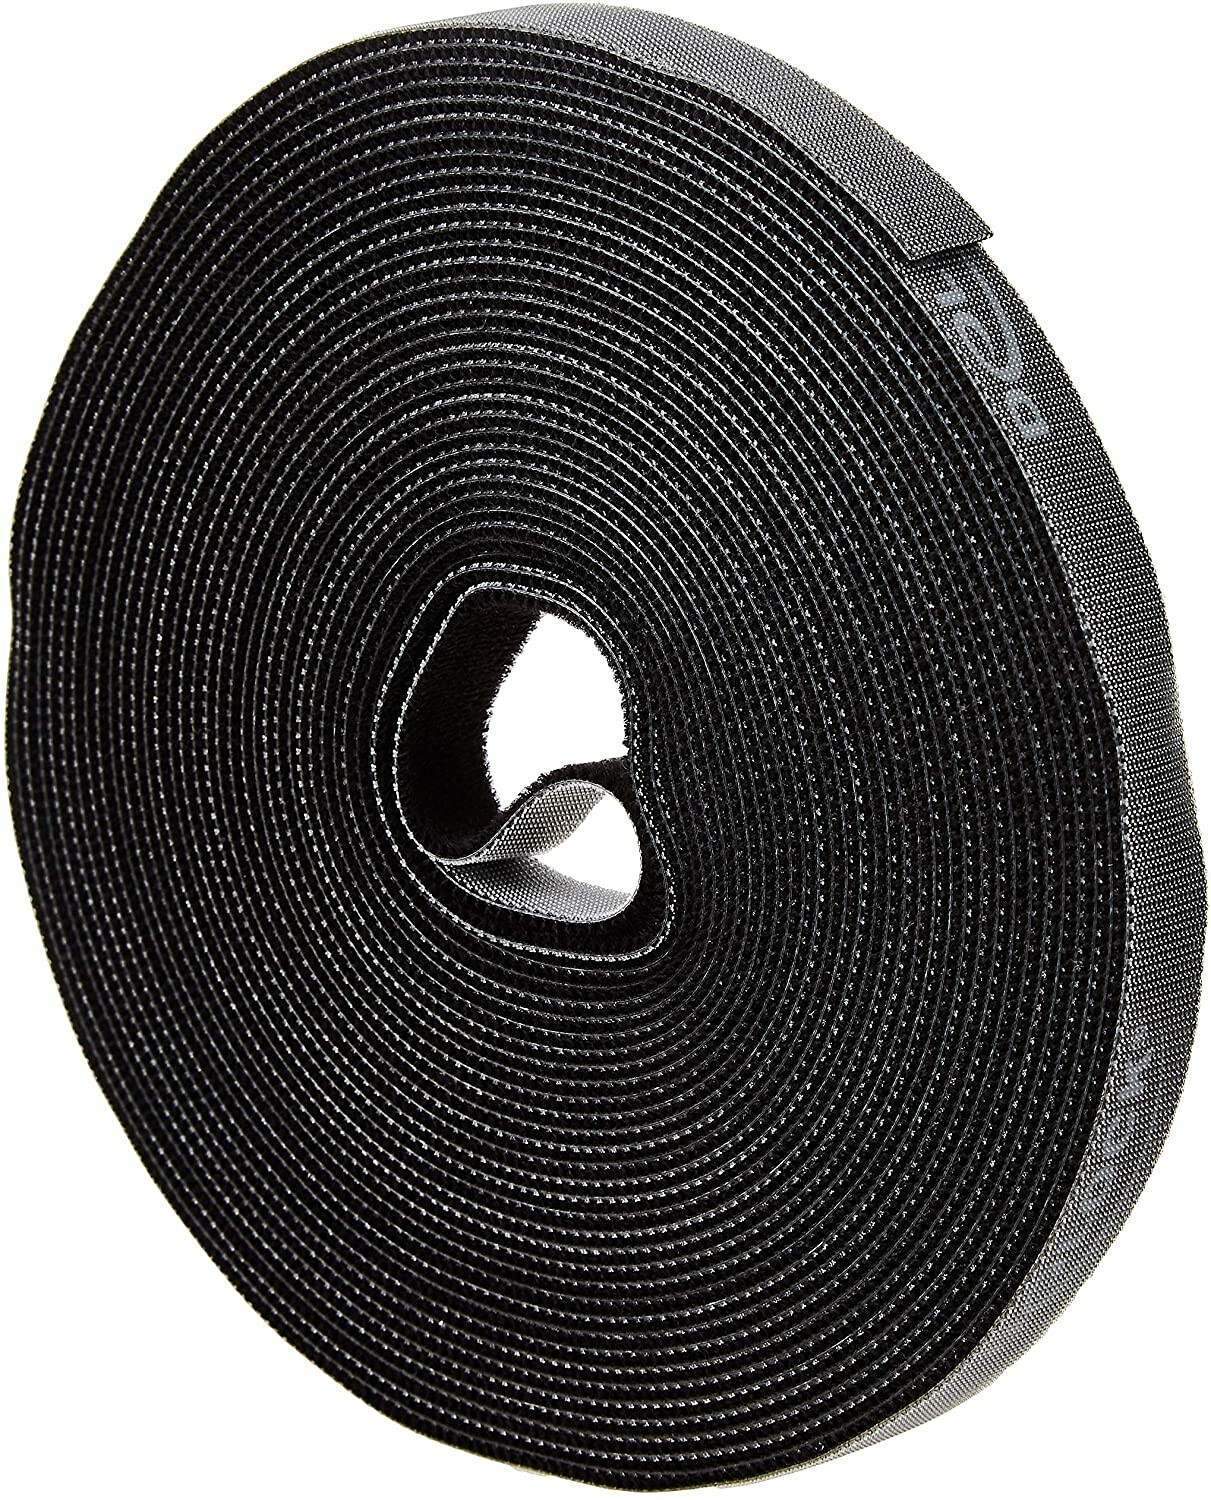 100 colliers de serrage réutilisables, coloris noir - 200 x 7,6 mm - PEARL